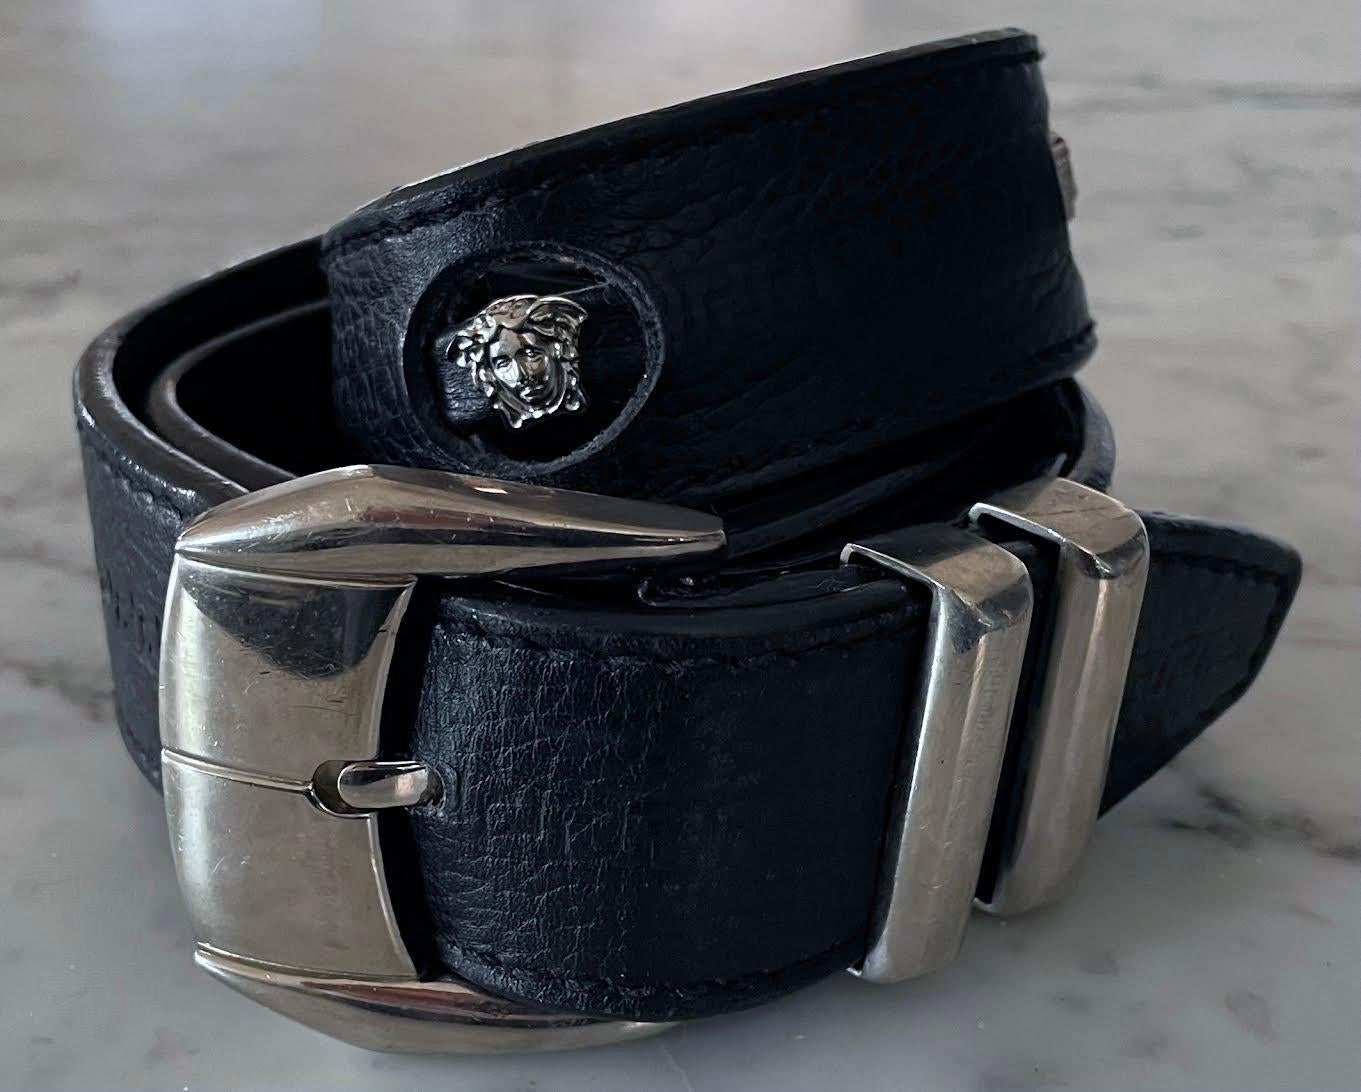 Texturierter schwarzer Ledergürtel mit griechischer Schlüsselprägung und Ausschnitten mit silberfarbenen Medusa-Köpfen, entworfen von Gianni Versace in den 1990er Jahren. Der Gürtel ist mit der Größe 70 gekennzeichnet. Die Gürtellöcher liegen bei